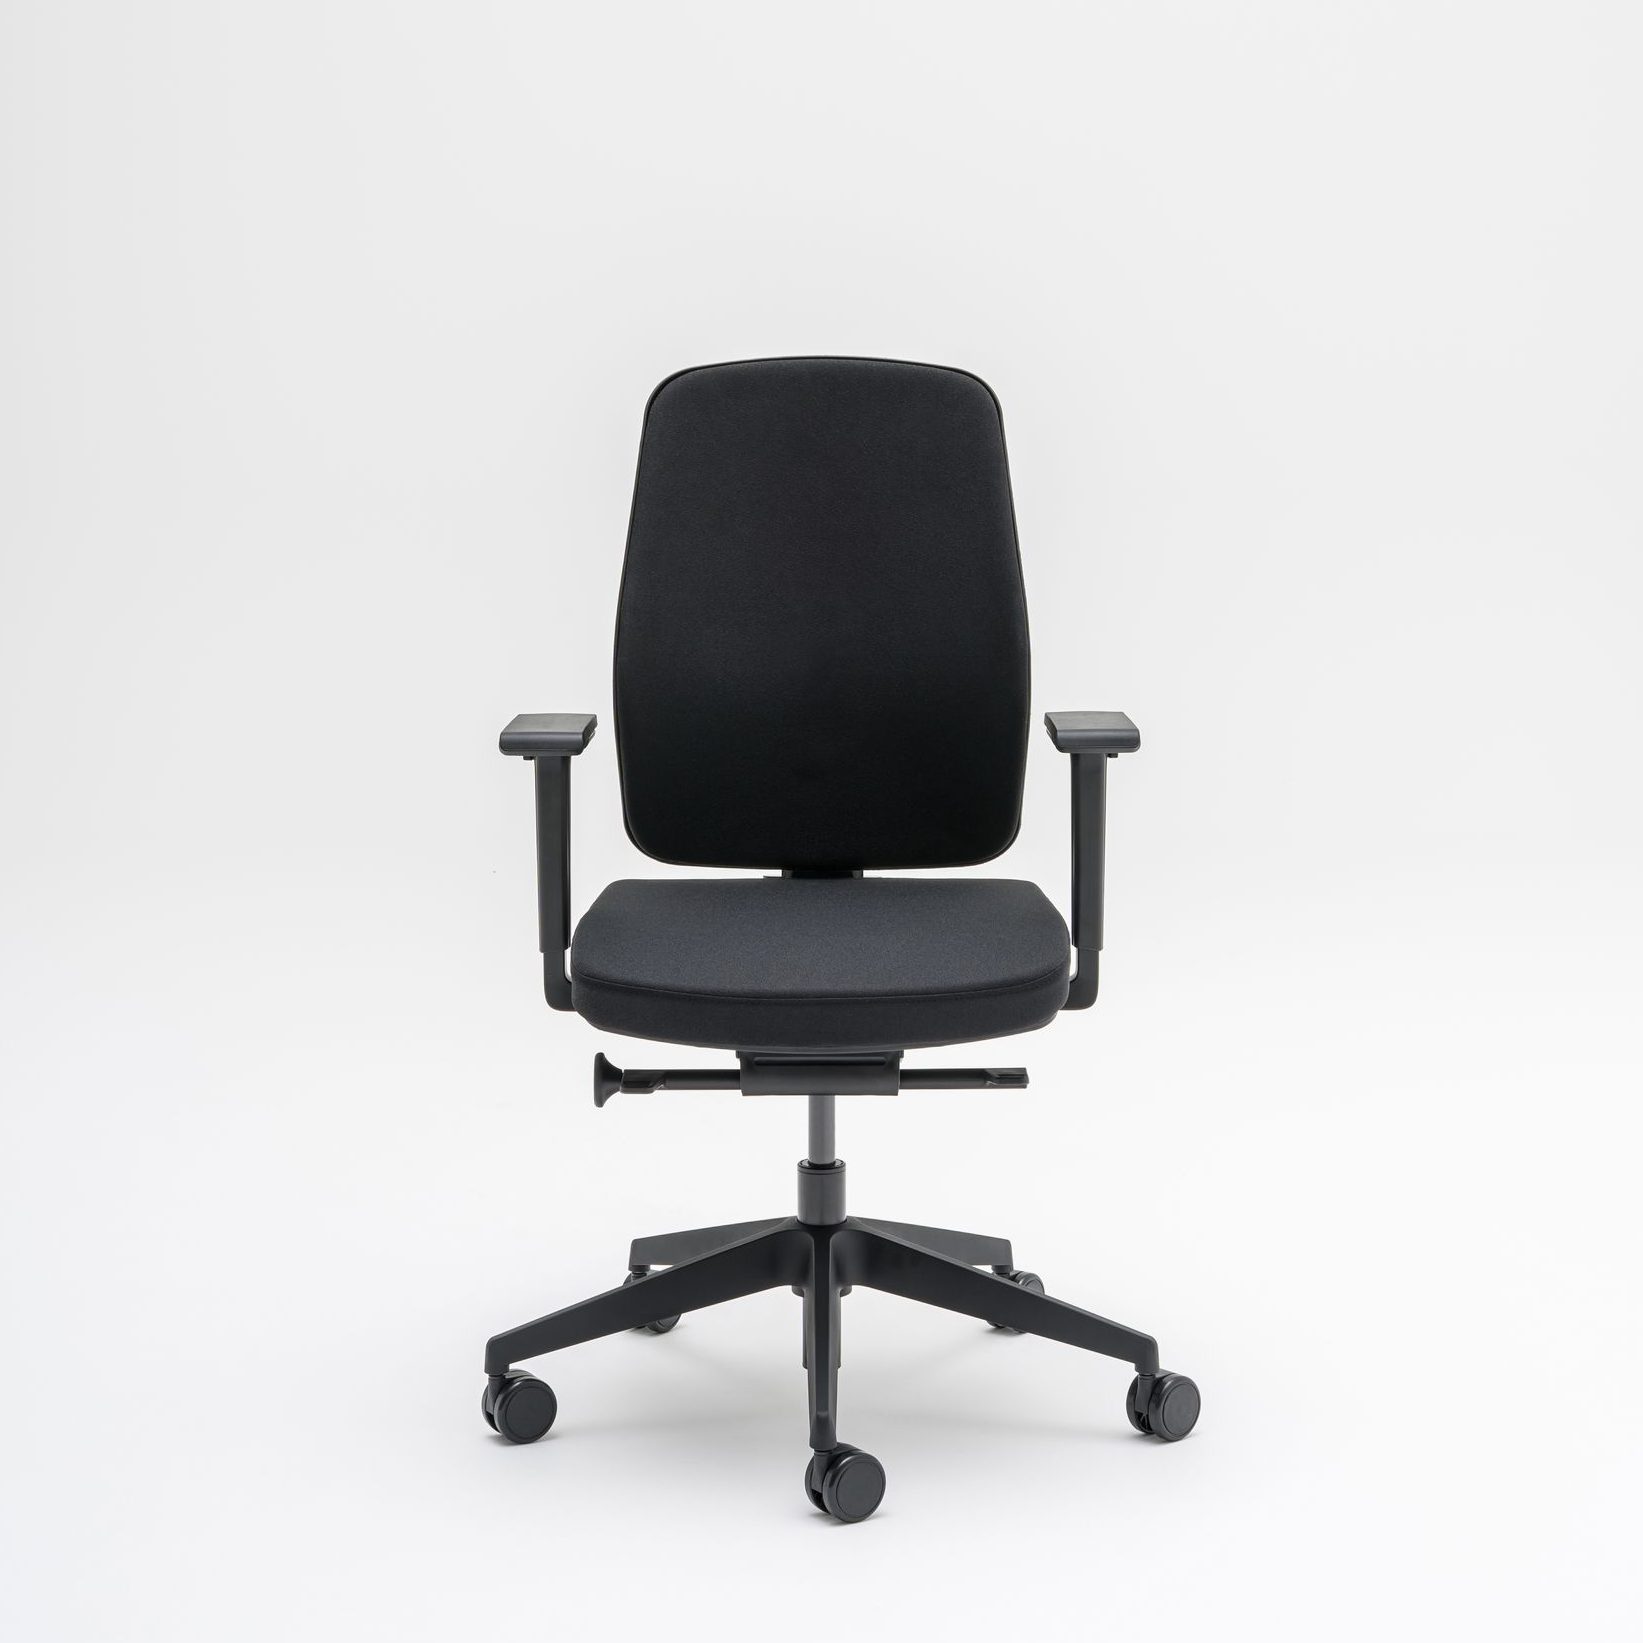 Chaise de Bureau Ergonomique - Chaise de Bureau Économique- Chaise Bureau